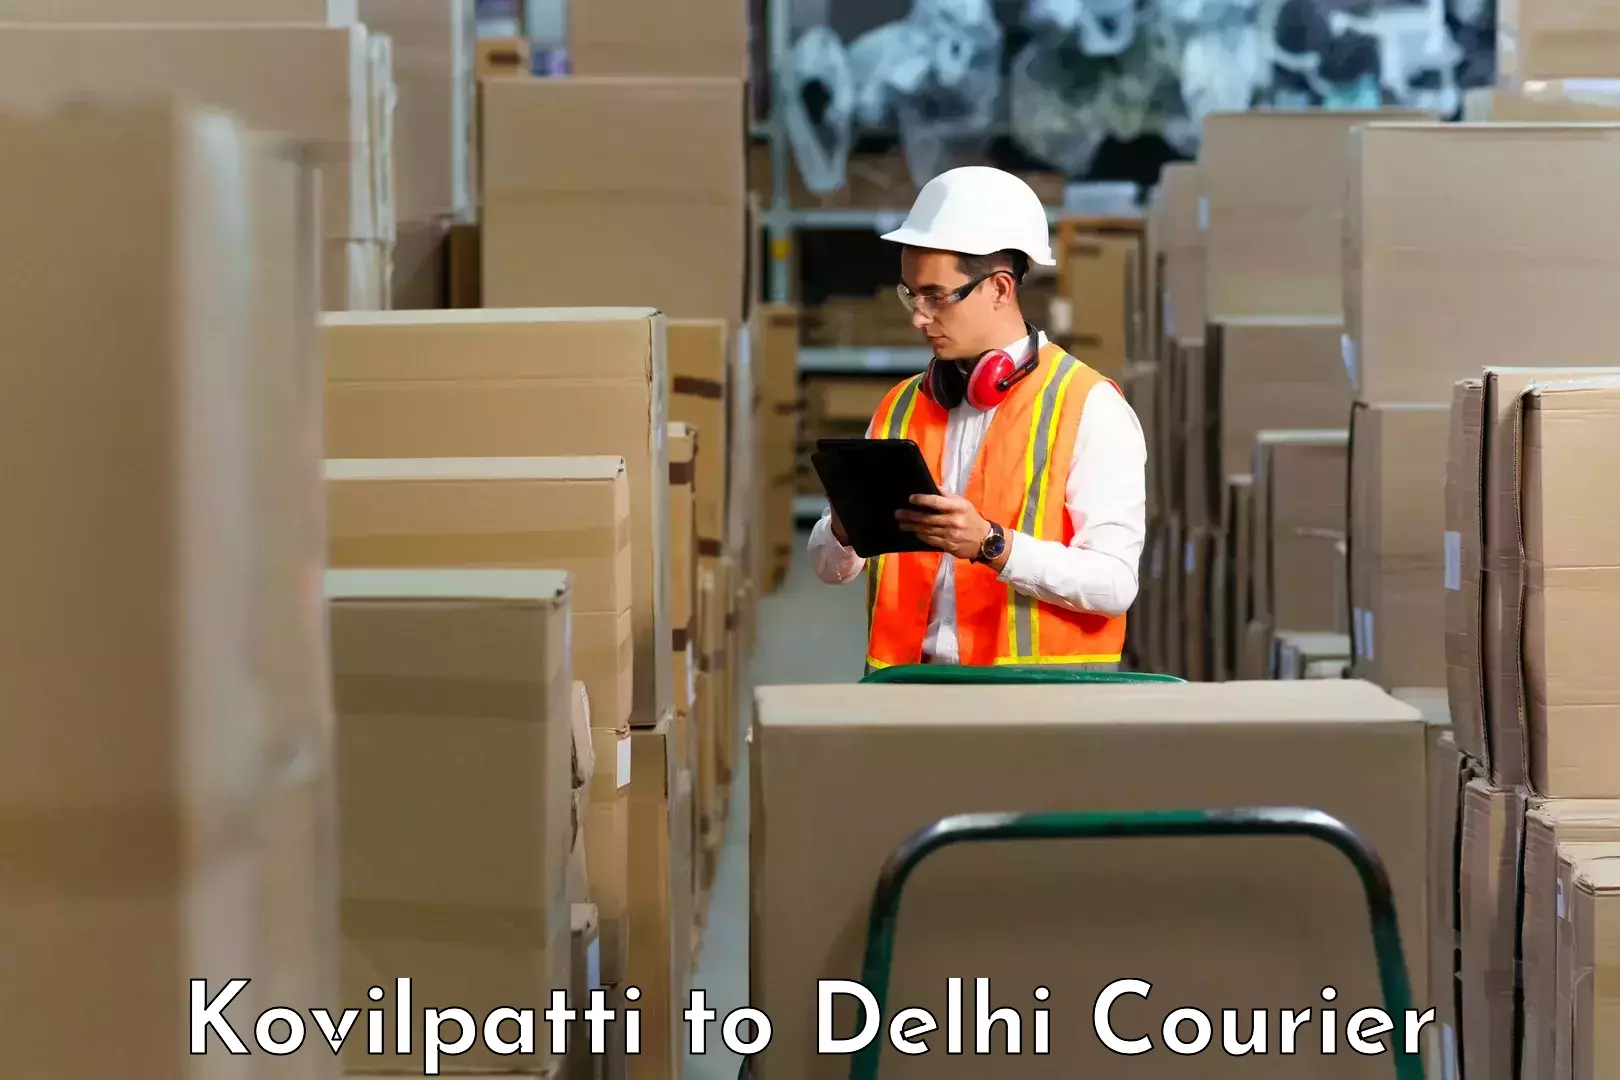 Smart shipping technology Kovilpatti to NCR